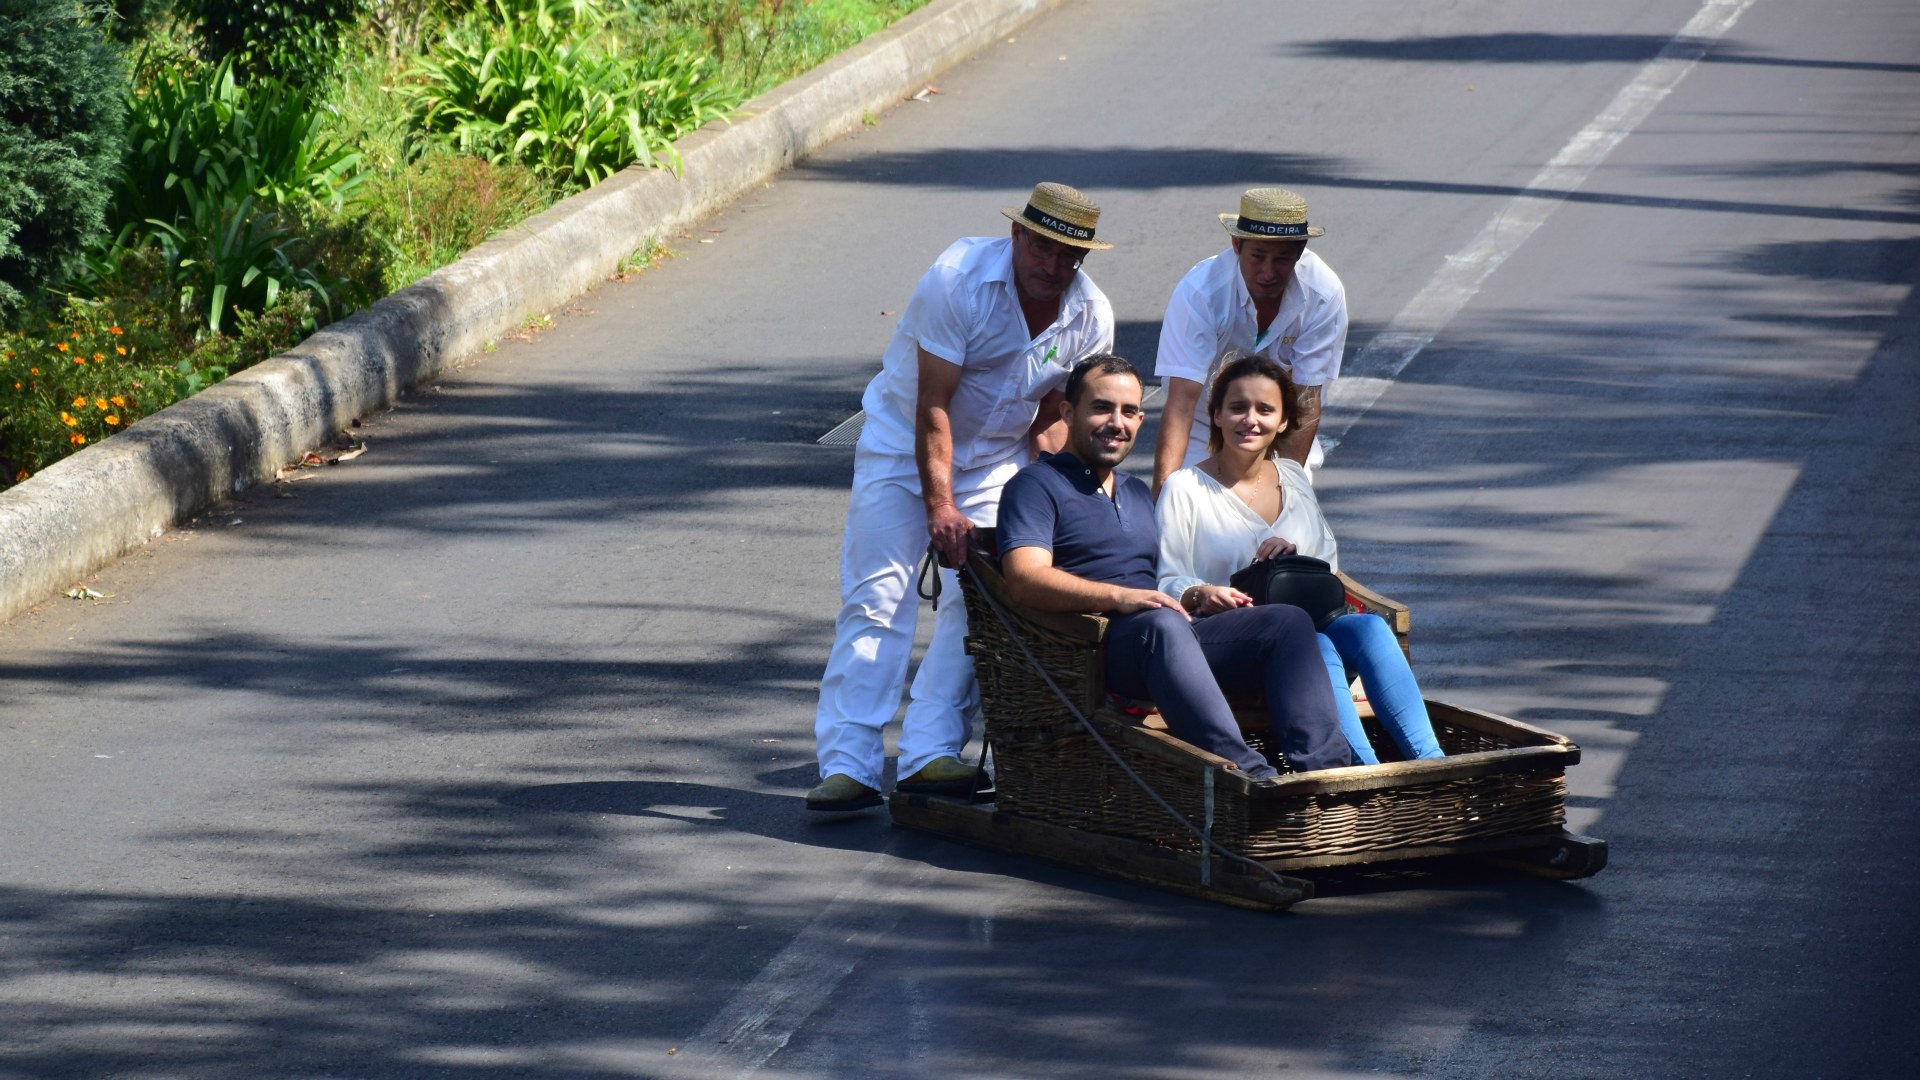 Basket Ride, Funchal